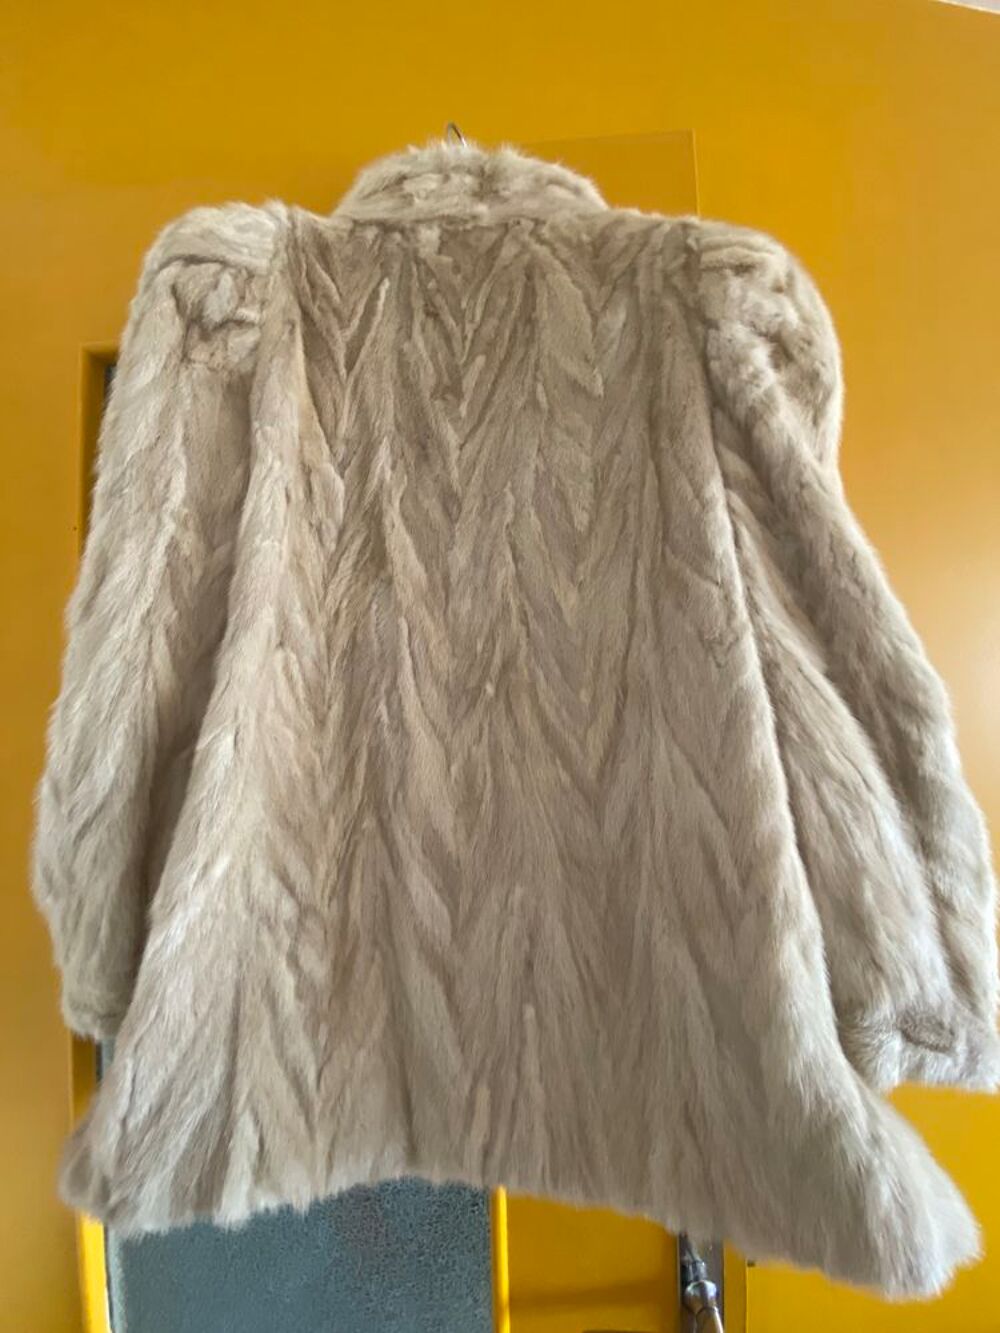 Manteau vison blanc 3/4.
Vtements